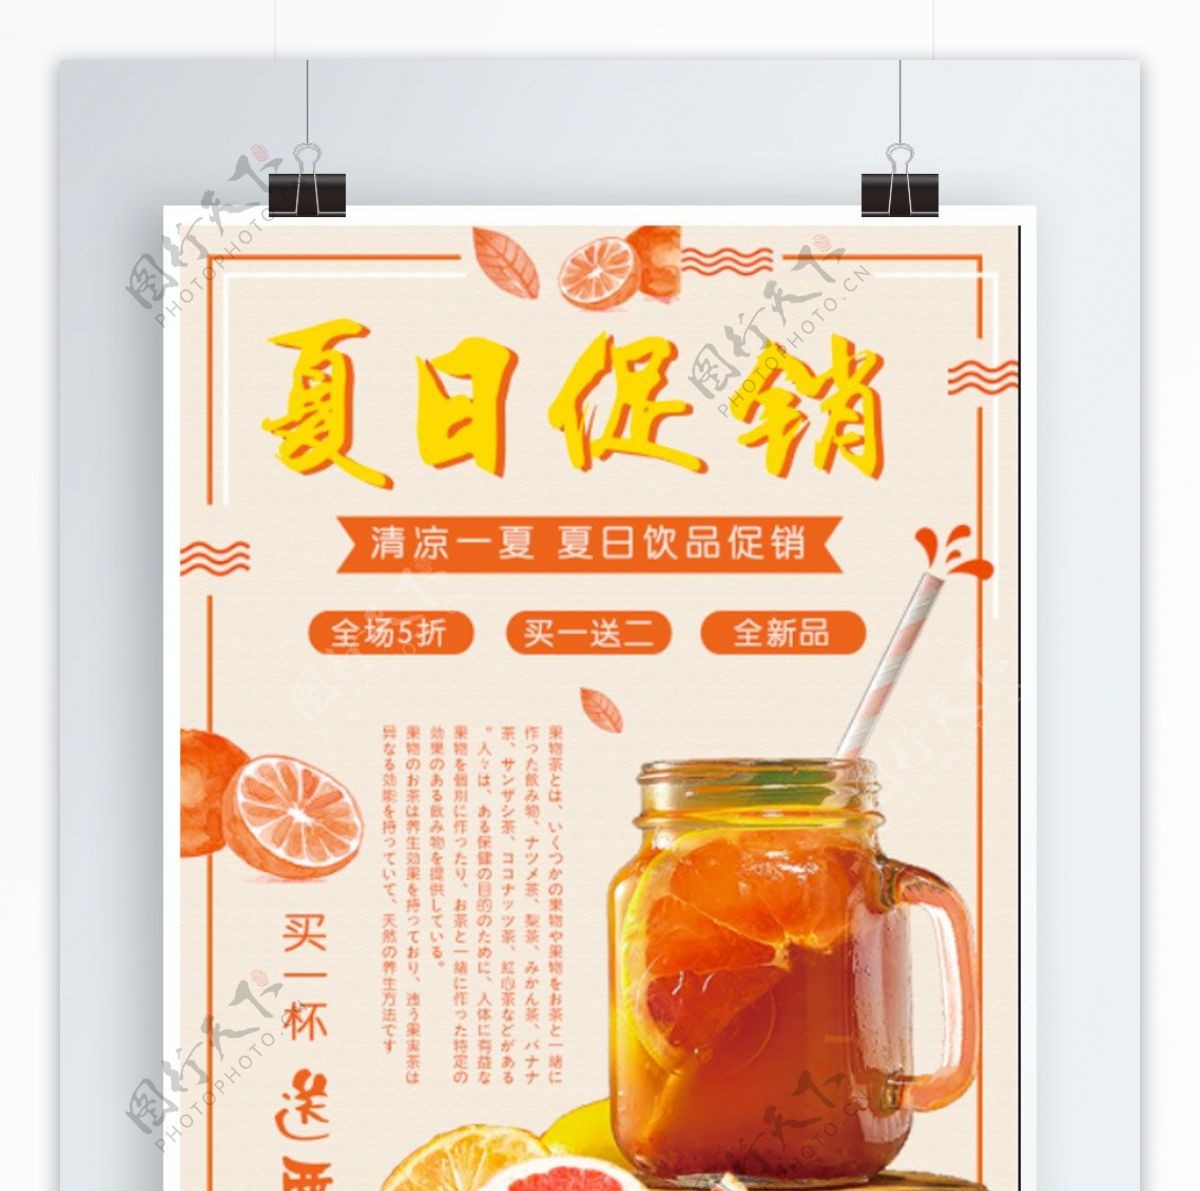 清新简约创意几何橙色夏日饮品促销海报